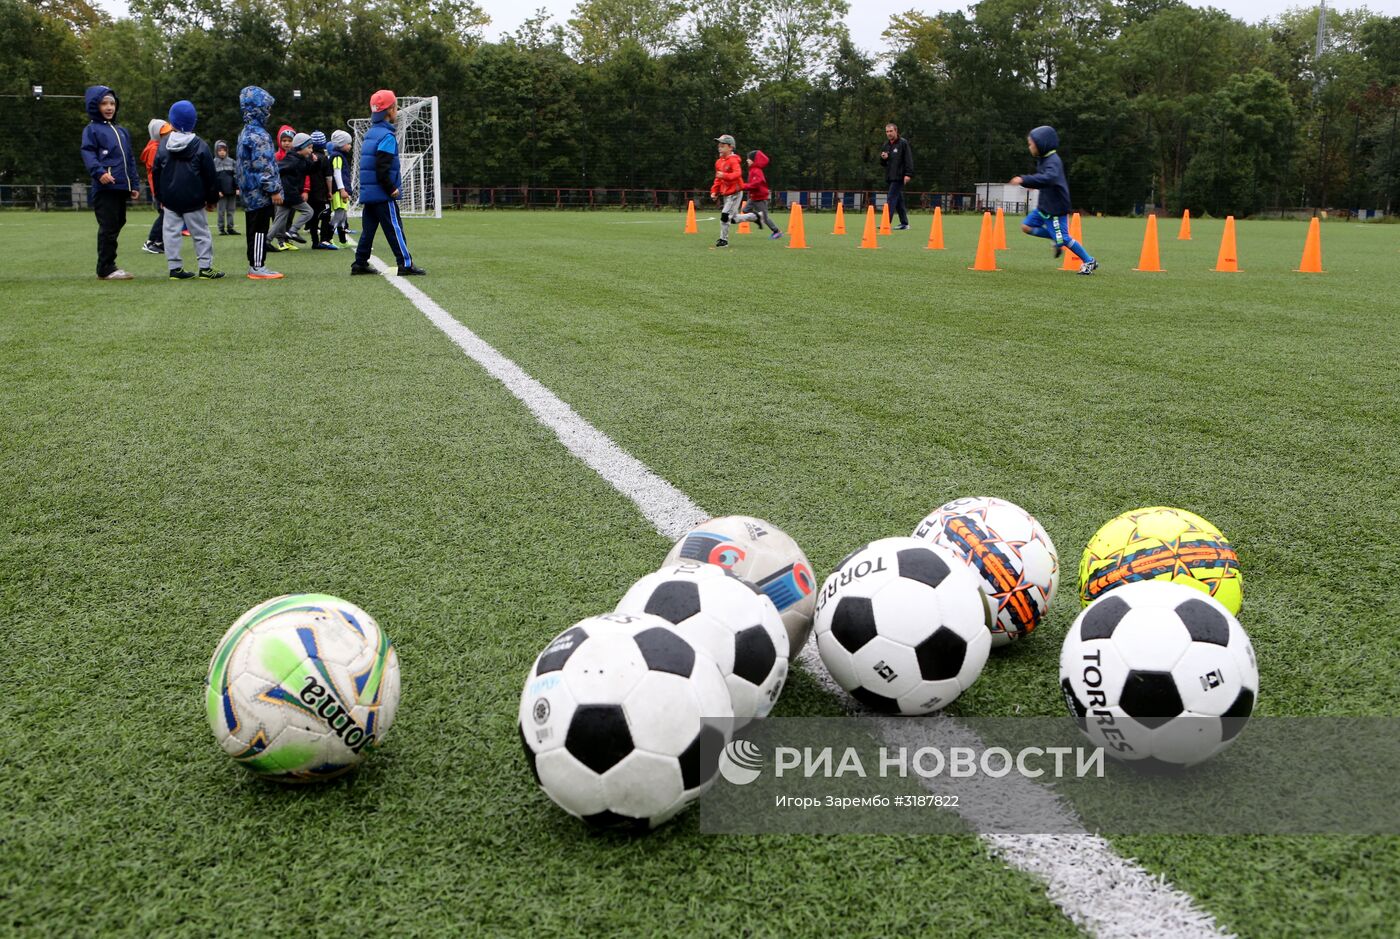 Тренировочная база для команд-участниц ЧМ-2018 по футболу в Калининграде